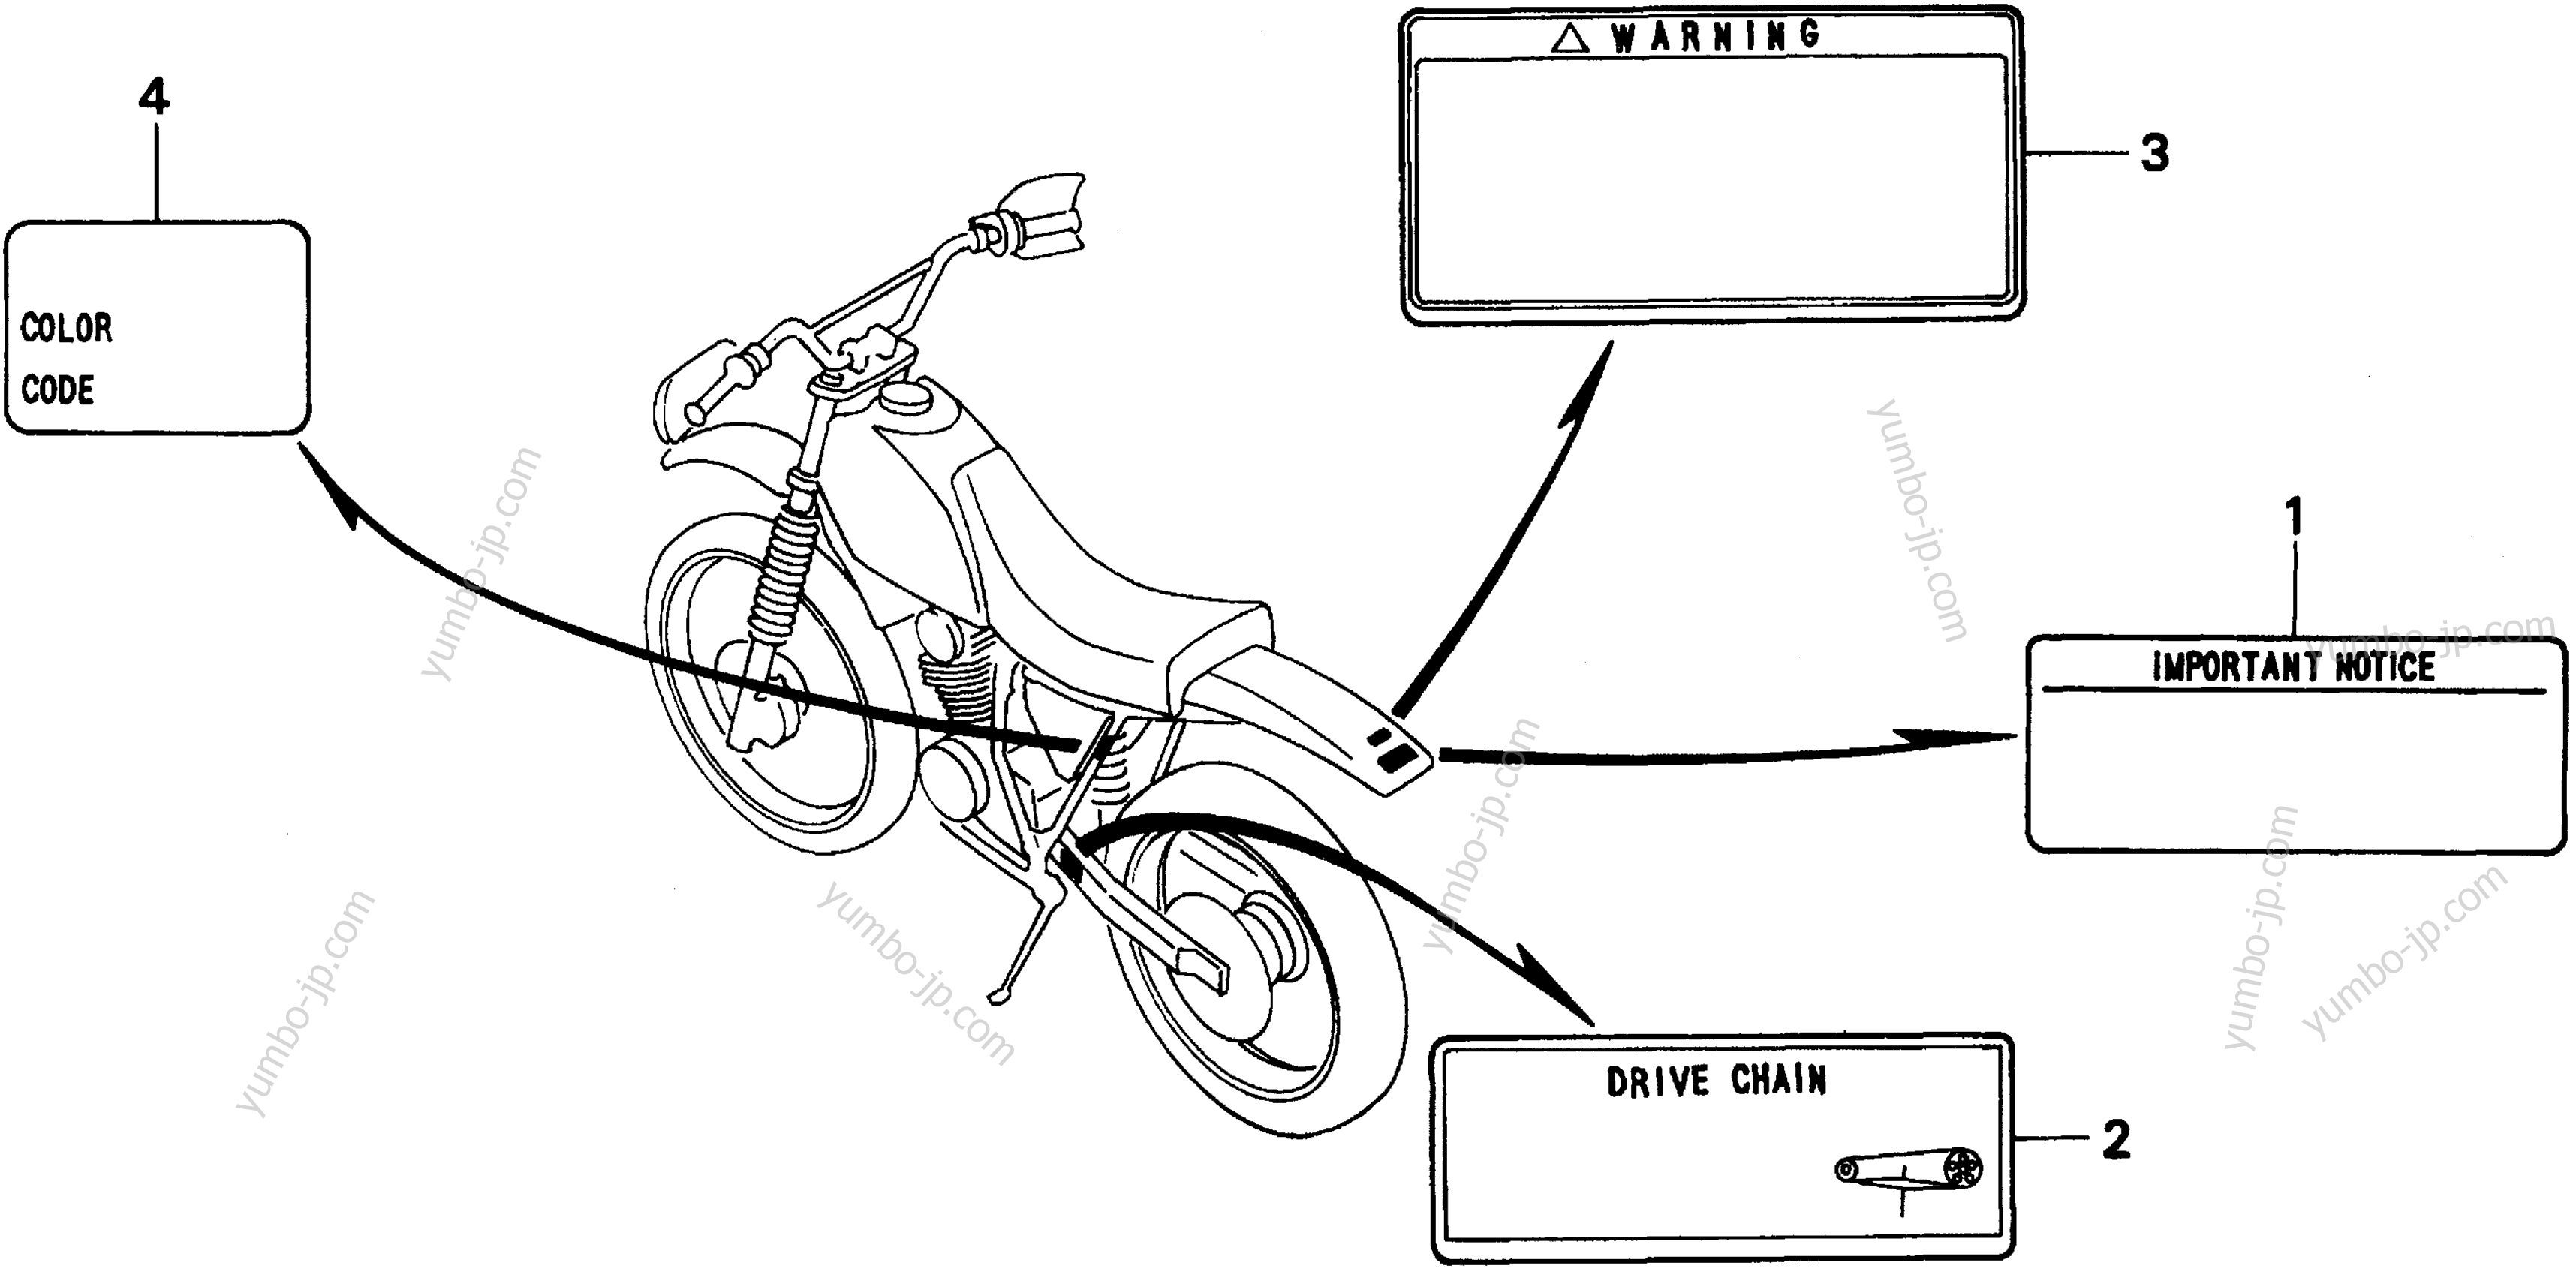 CAUTION LABELS для мотоциклов HONDA XR200R A 1995 г.